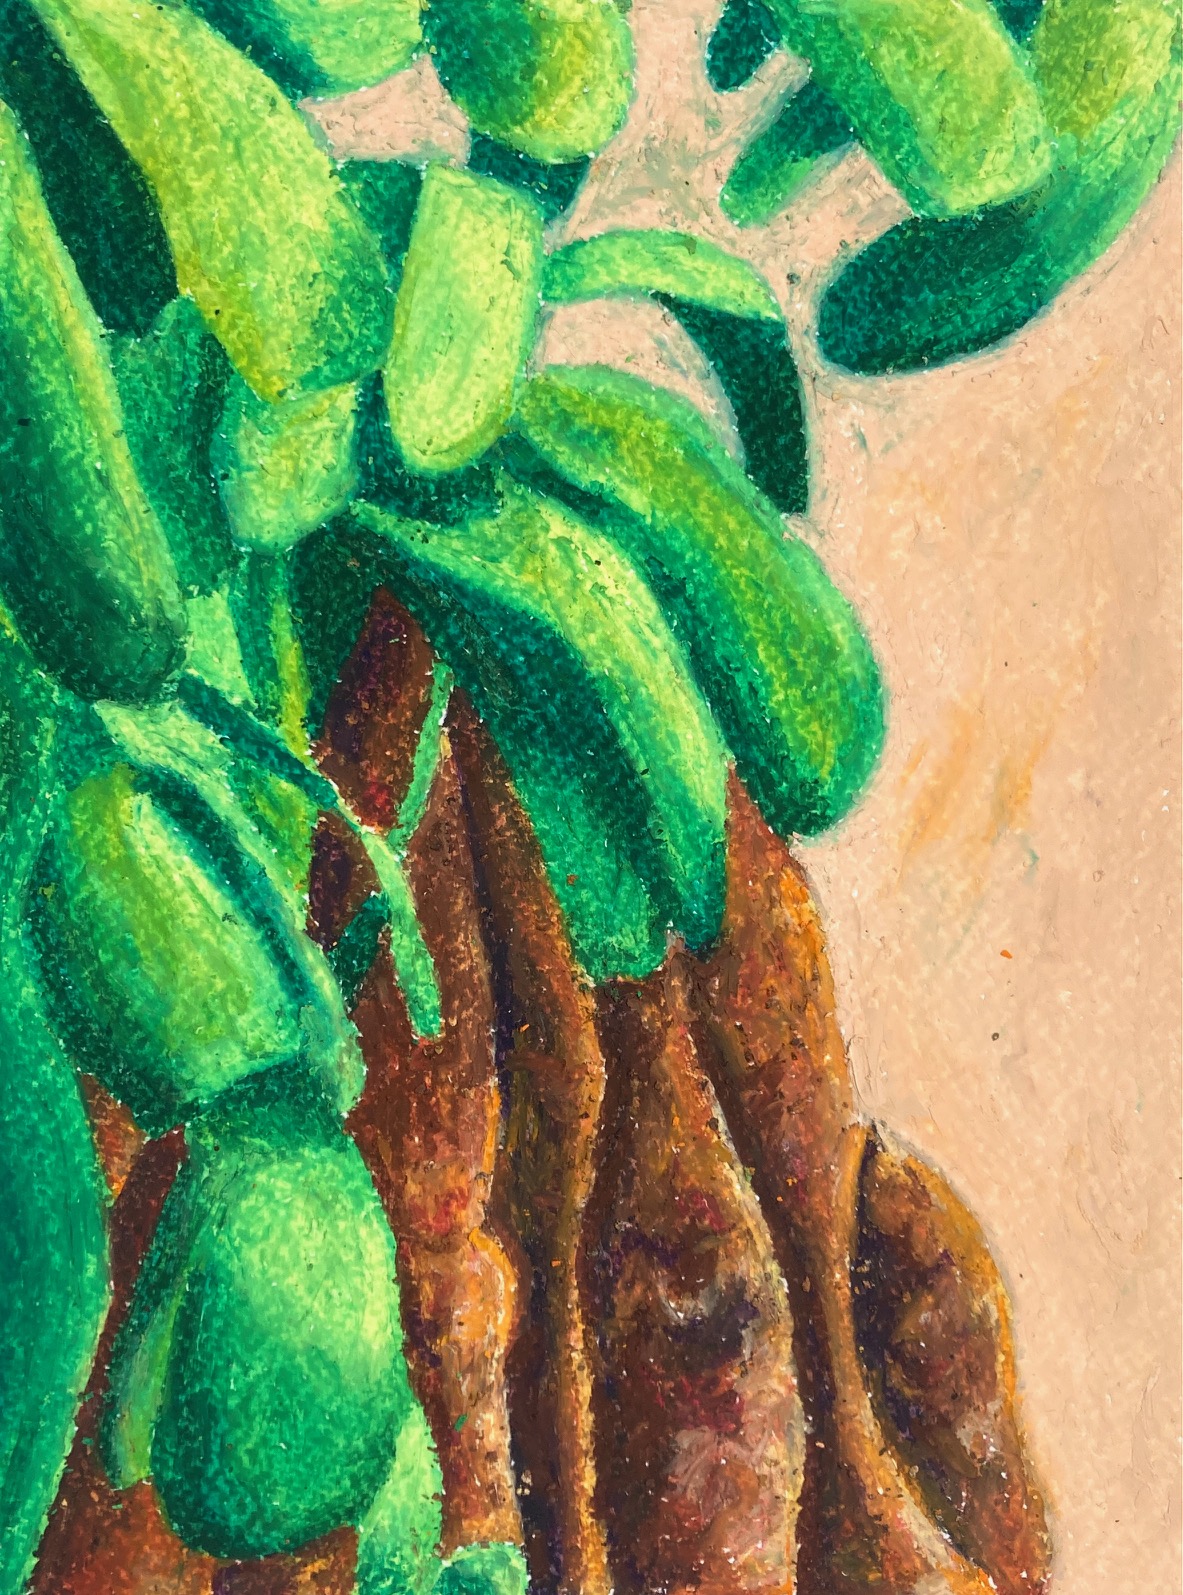 Vihreä lehtinen kasvi ruskeine juurineen aprikoosilla taustalla, öljypastelli paperille.